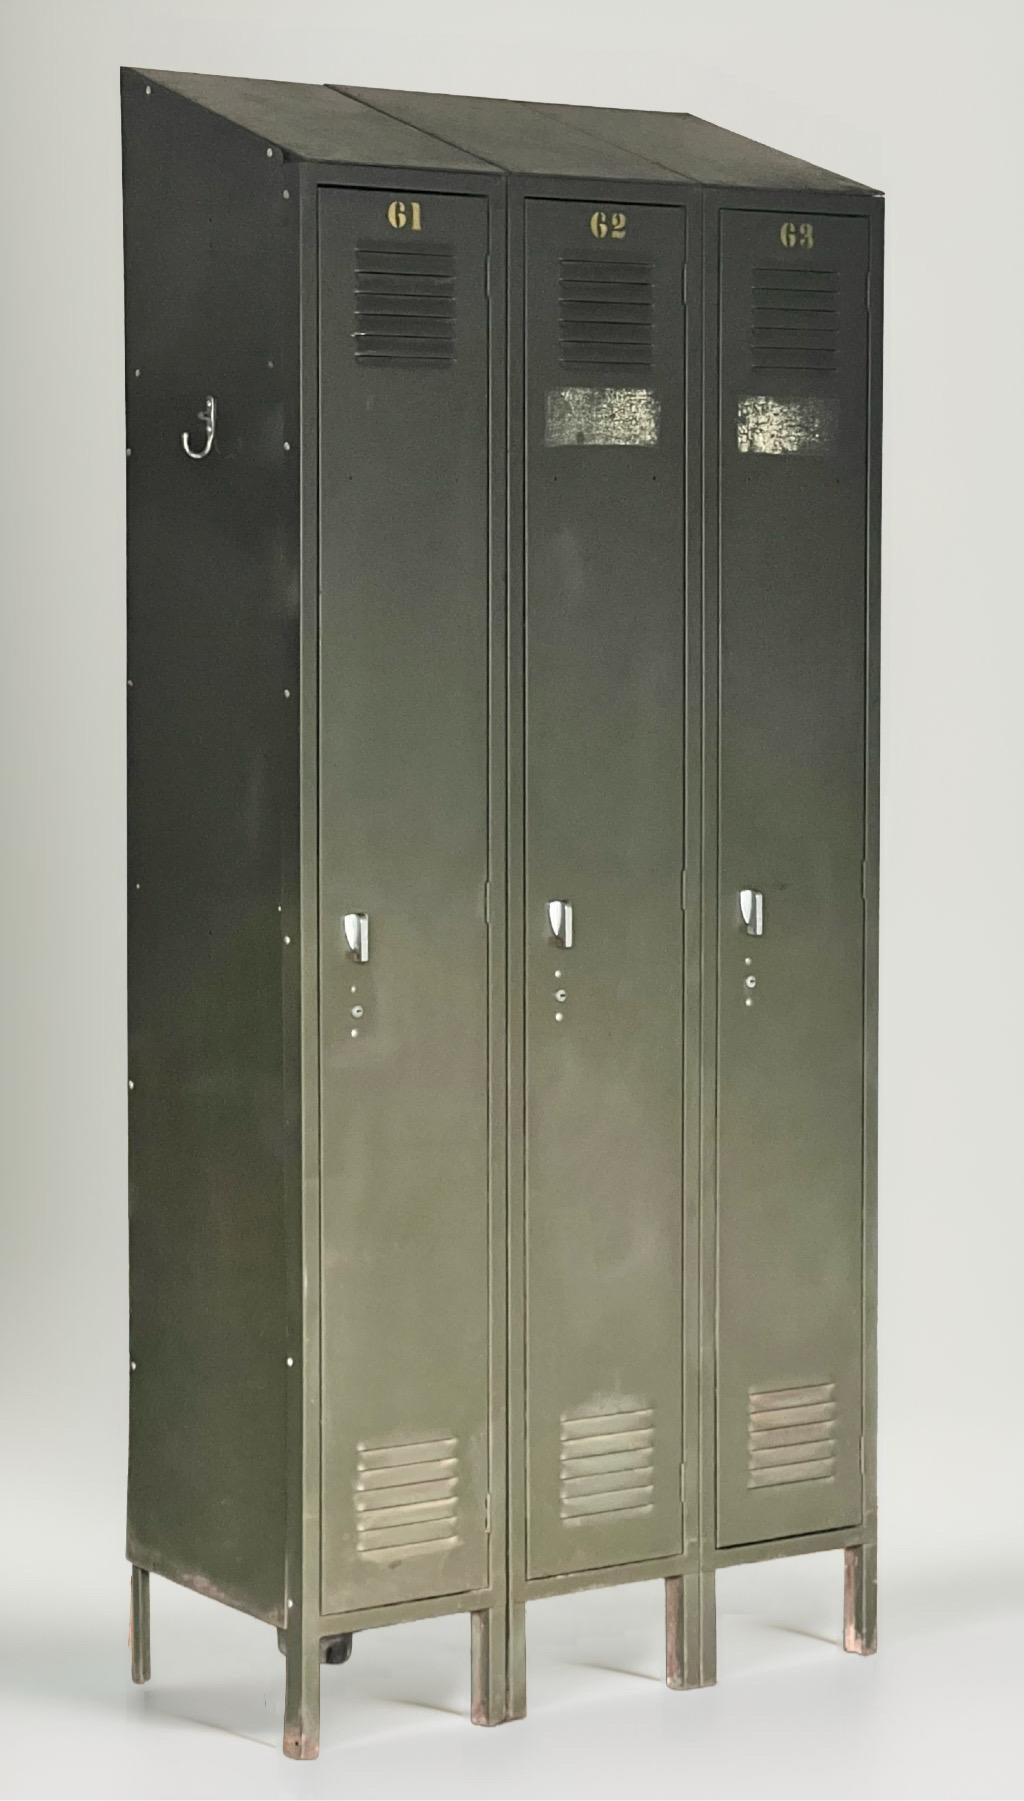 Schräger Stahlschrank in Armeegrün von Lyon Metal, ca. 1950er Jahre.

Eine freistehende Einheit mit drei Schränken aus schwerem emailliertem Stahl, hergestellt von Amerikas führendem Hersteller von industriellen Stahllagerprodukten seit 1901. Jedes